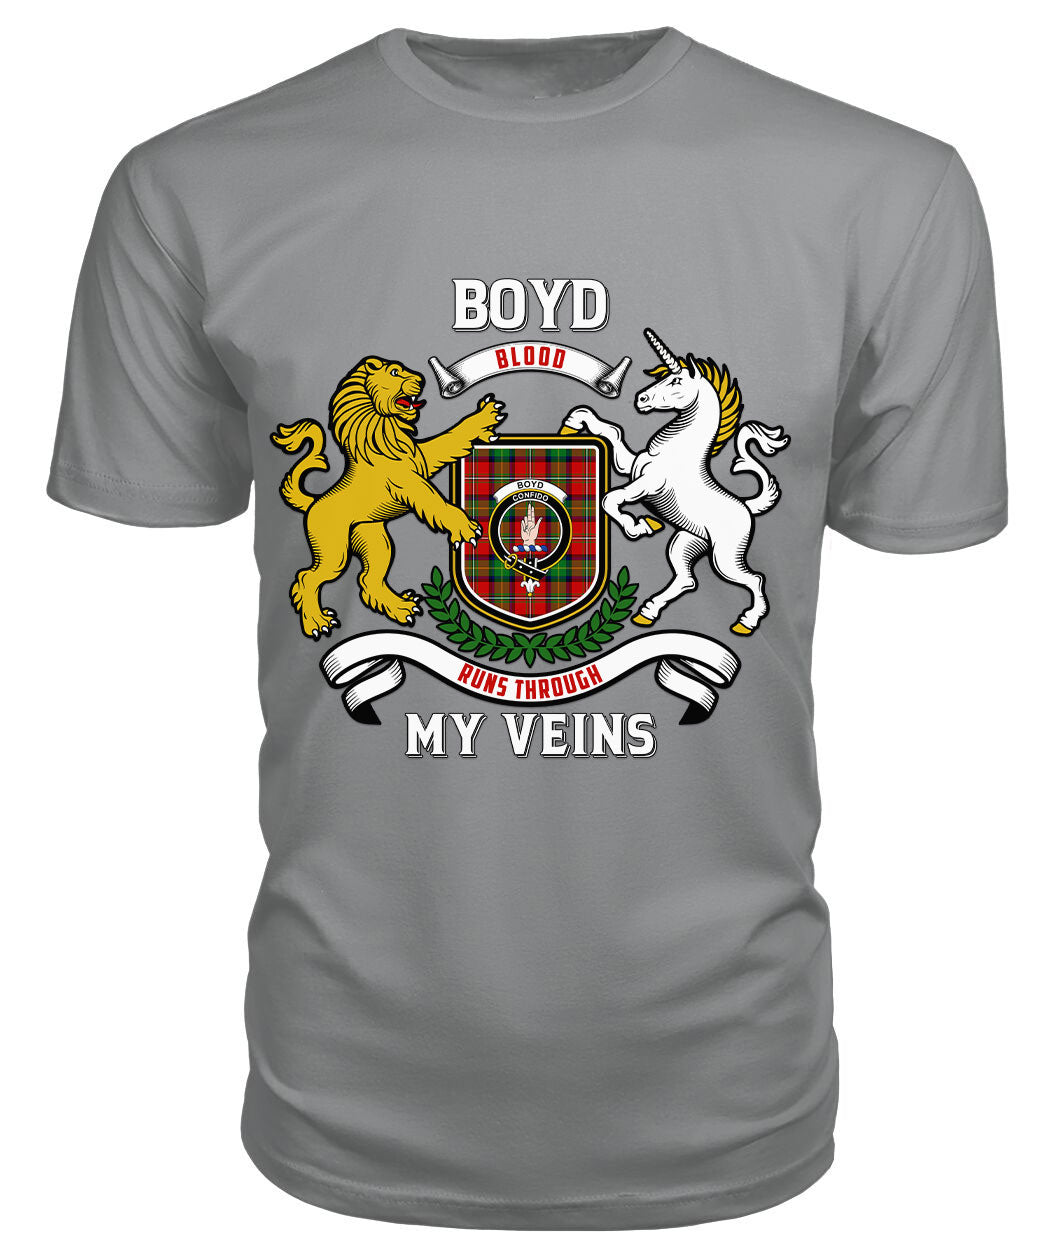 Boyd Modern Tartan Crest 2D T-shirt - Blood Runs Through My Veins Style